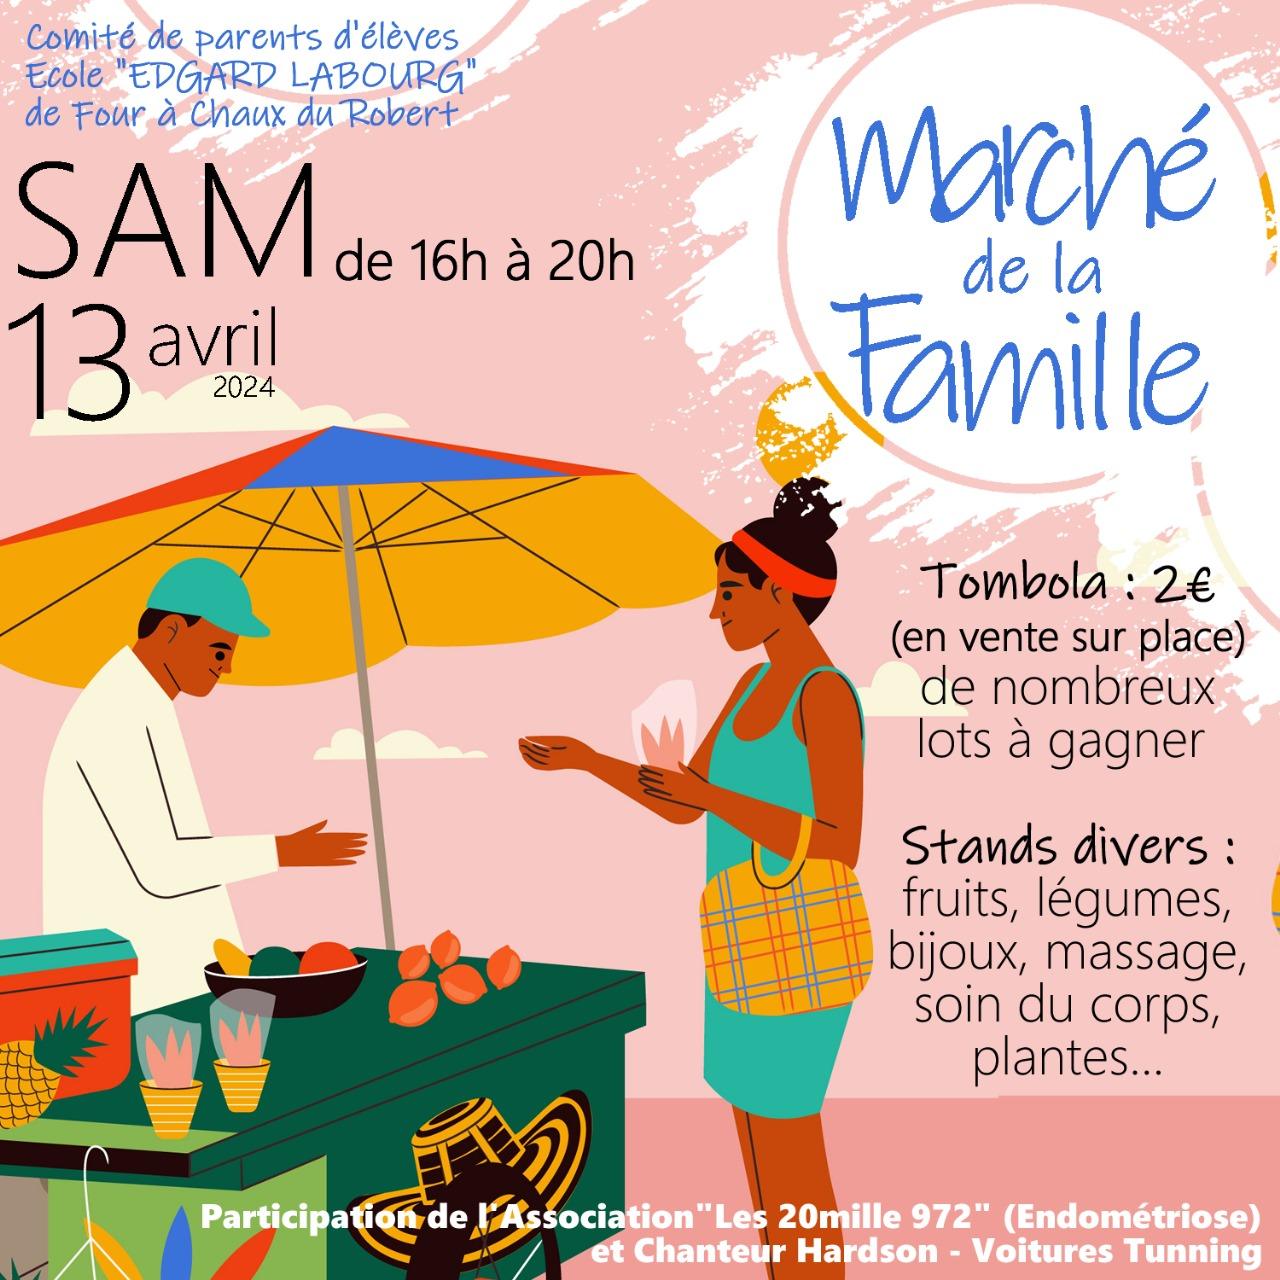 SAMEDI 13 AVRIL 2024 : MARCHE DE LA FAMILLE